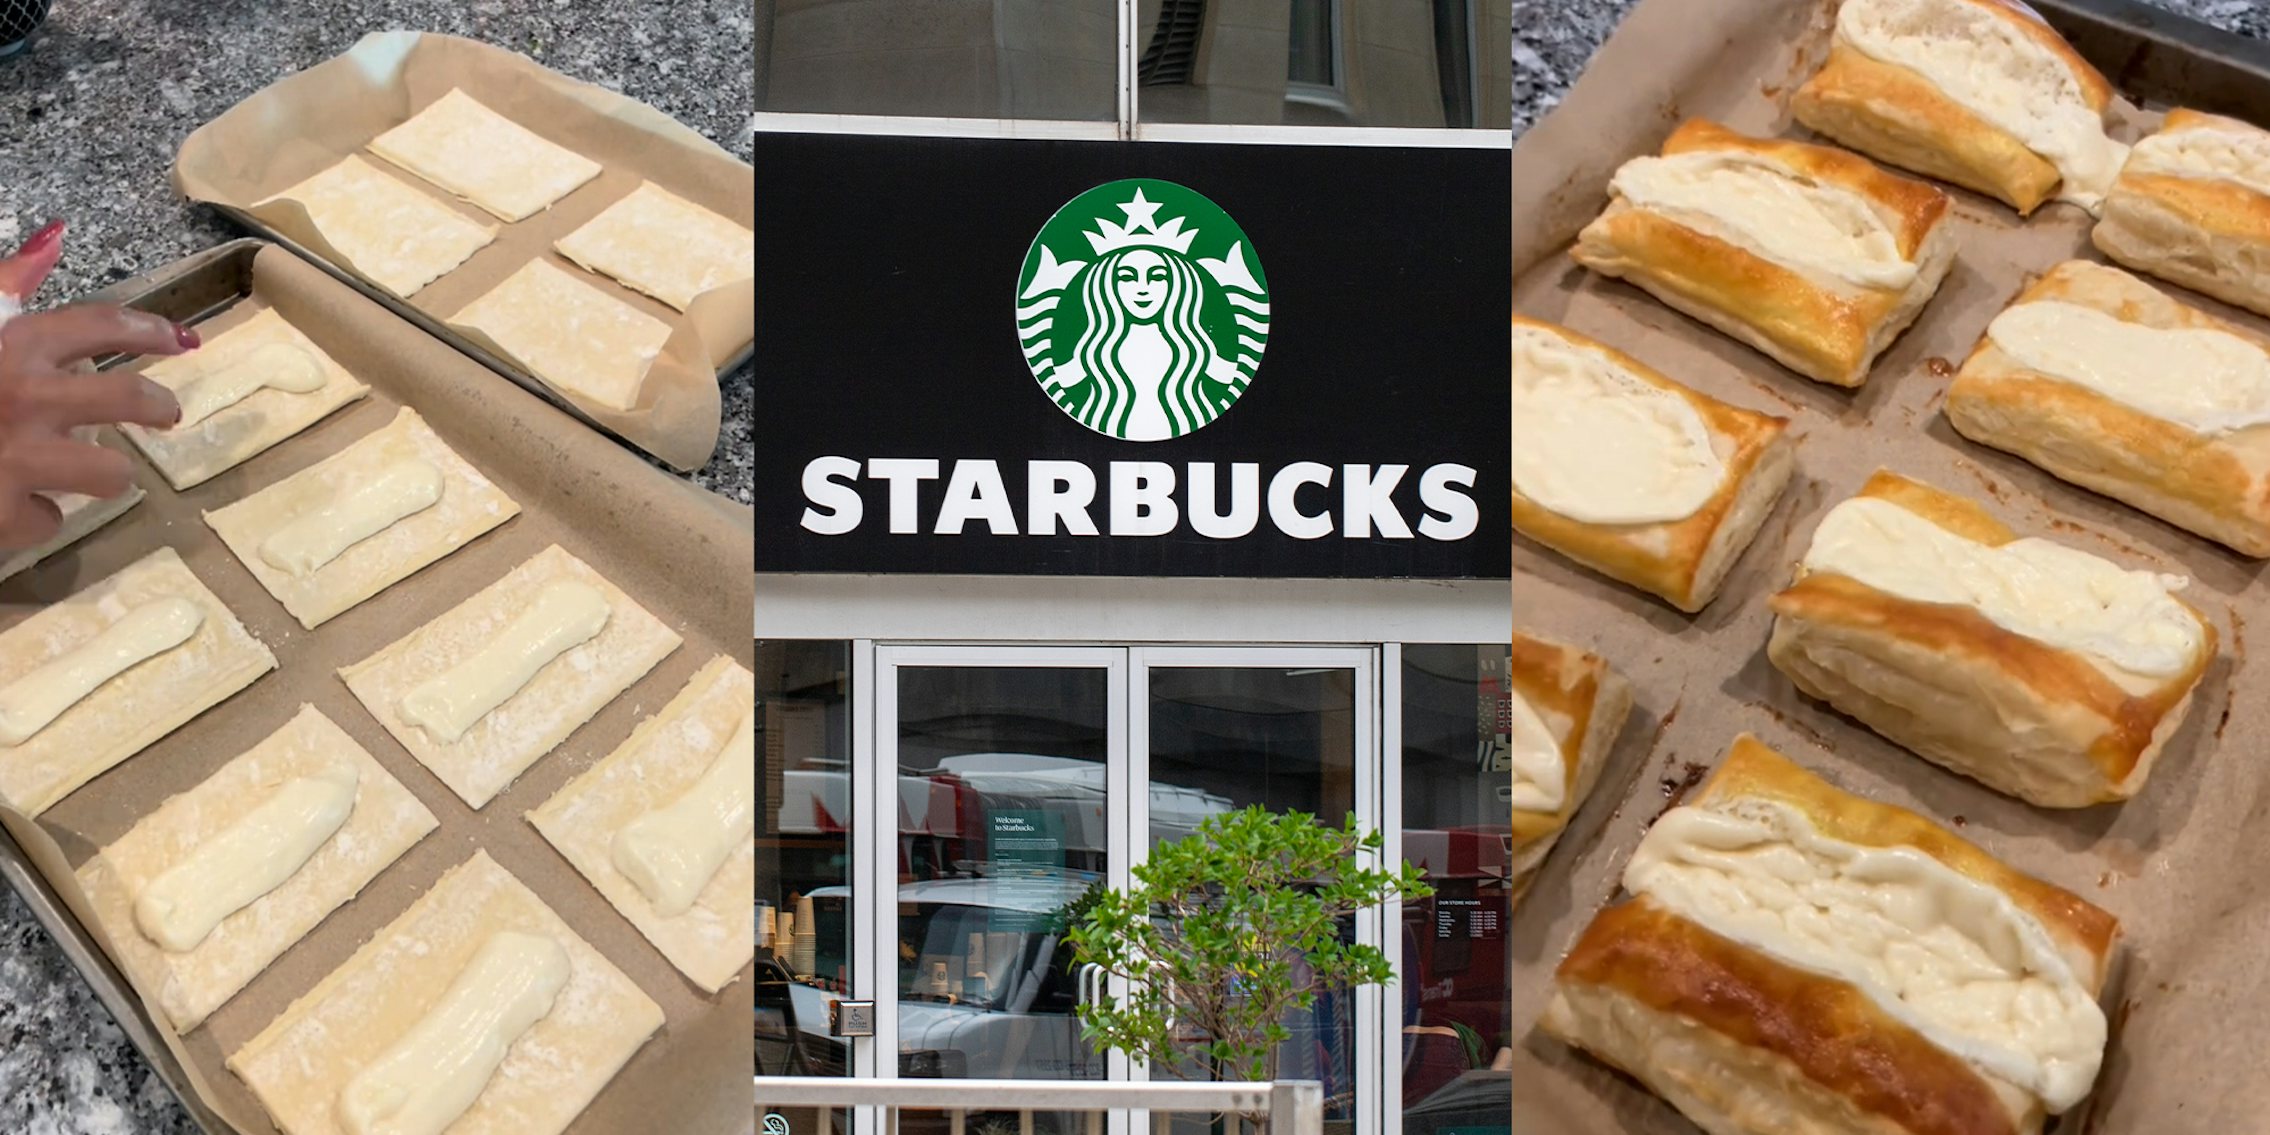 Customer shares hack to make Starbucks cheese danish at home